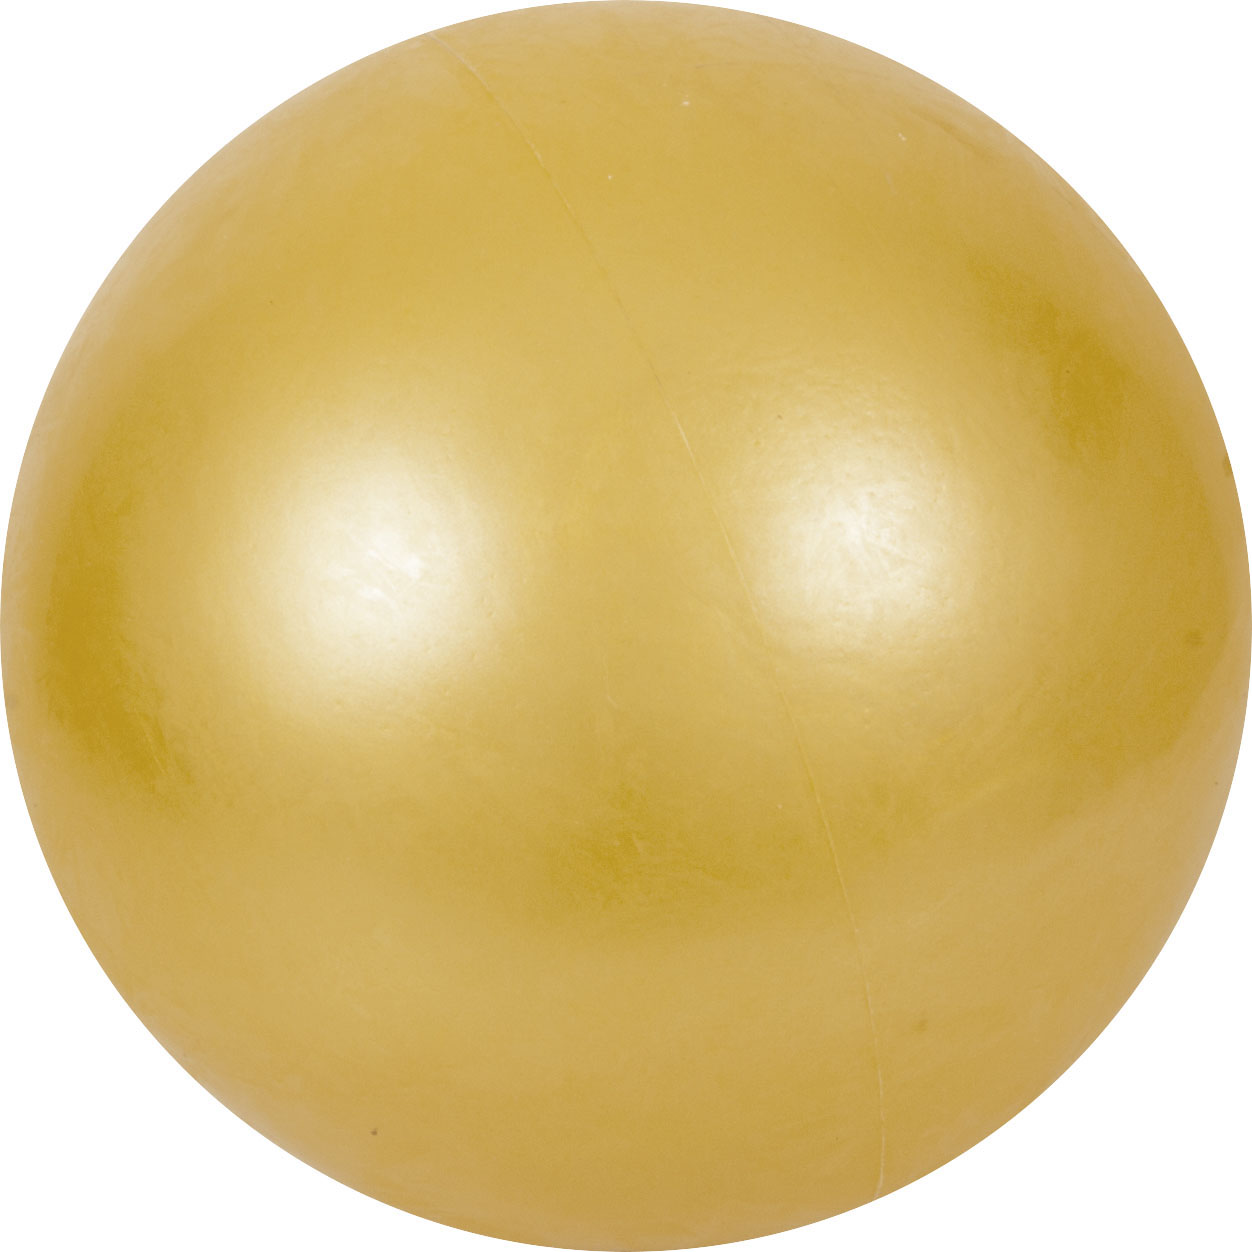 Μπάλα Ρυθμικής Γυμναστικής 16,5cm, Κίτρινη